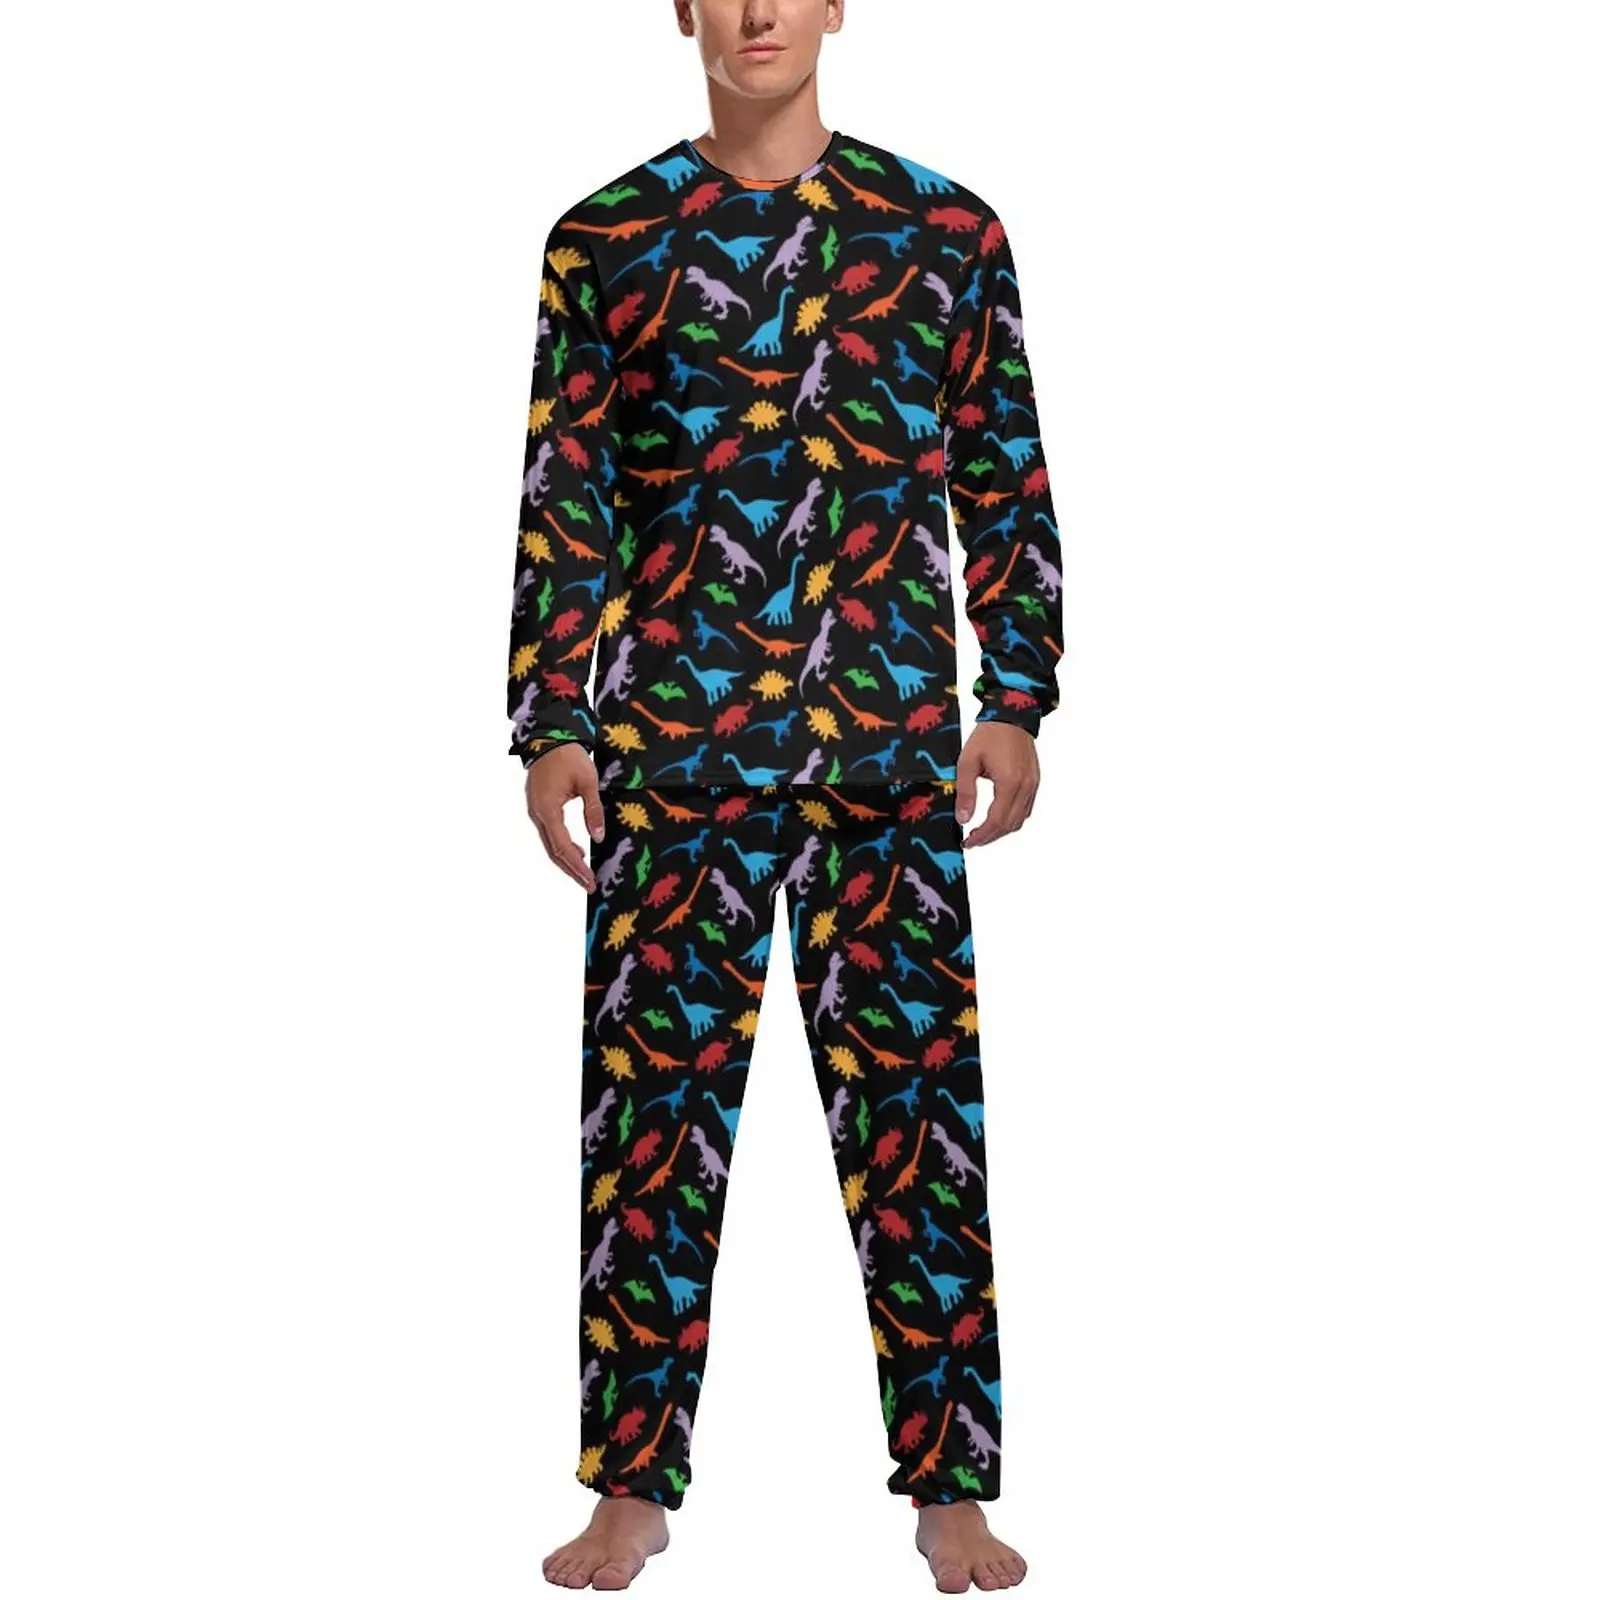 Colorful Dinosaur Pajamas Autumn Cute Animal Print Night Sleepwear Men Two Piece Graphic Long Sleeve Romantic Pajama Sets